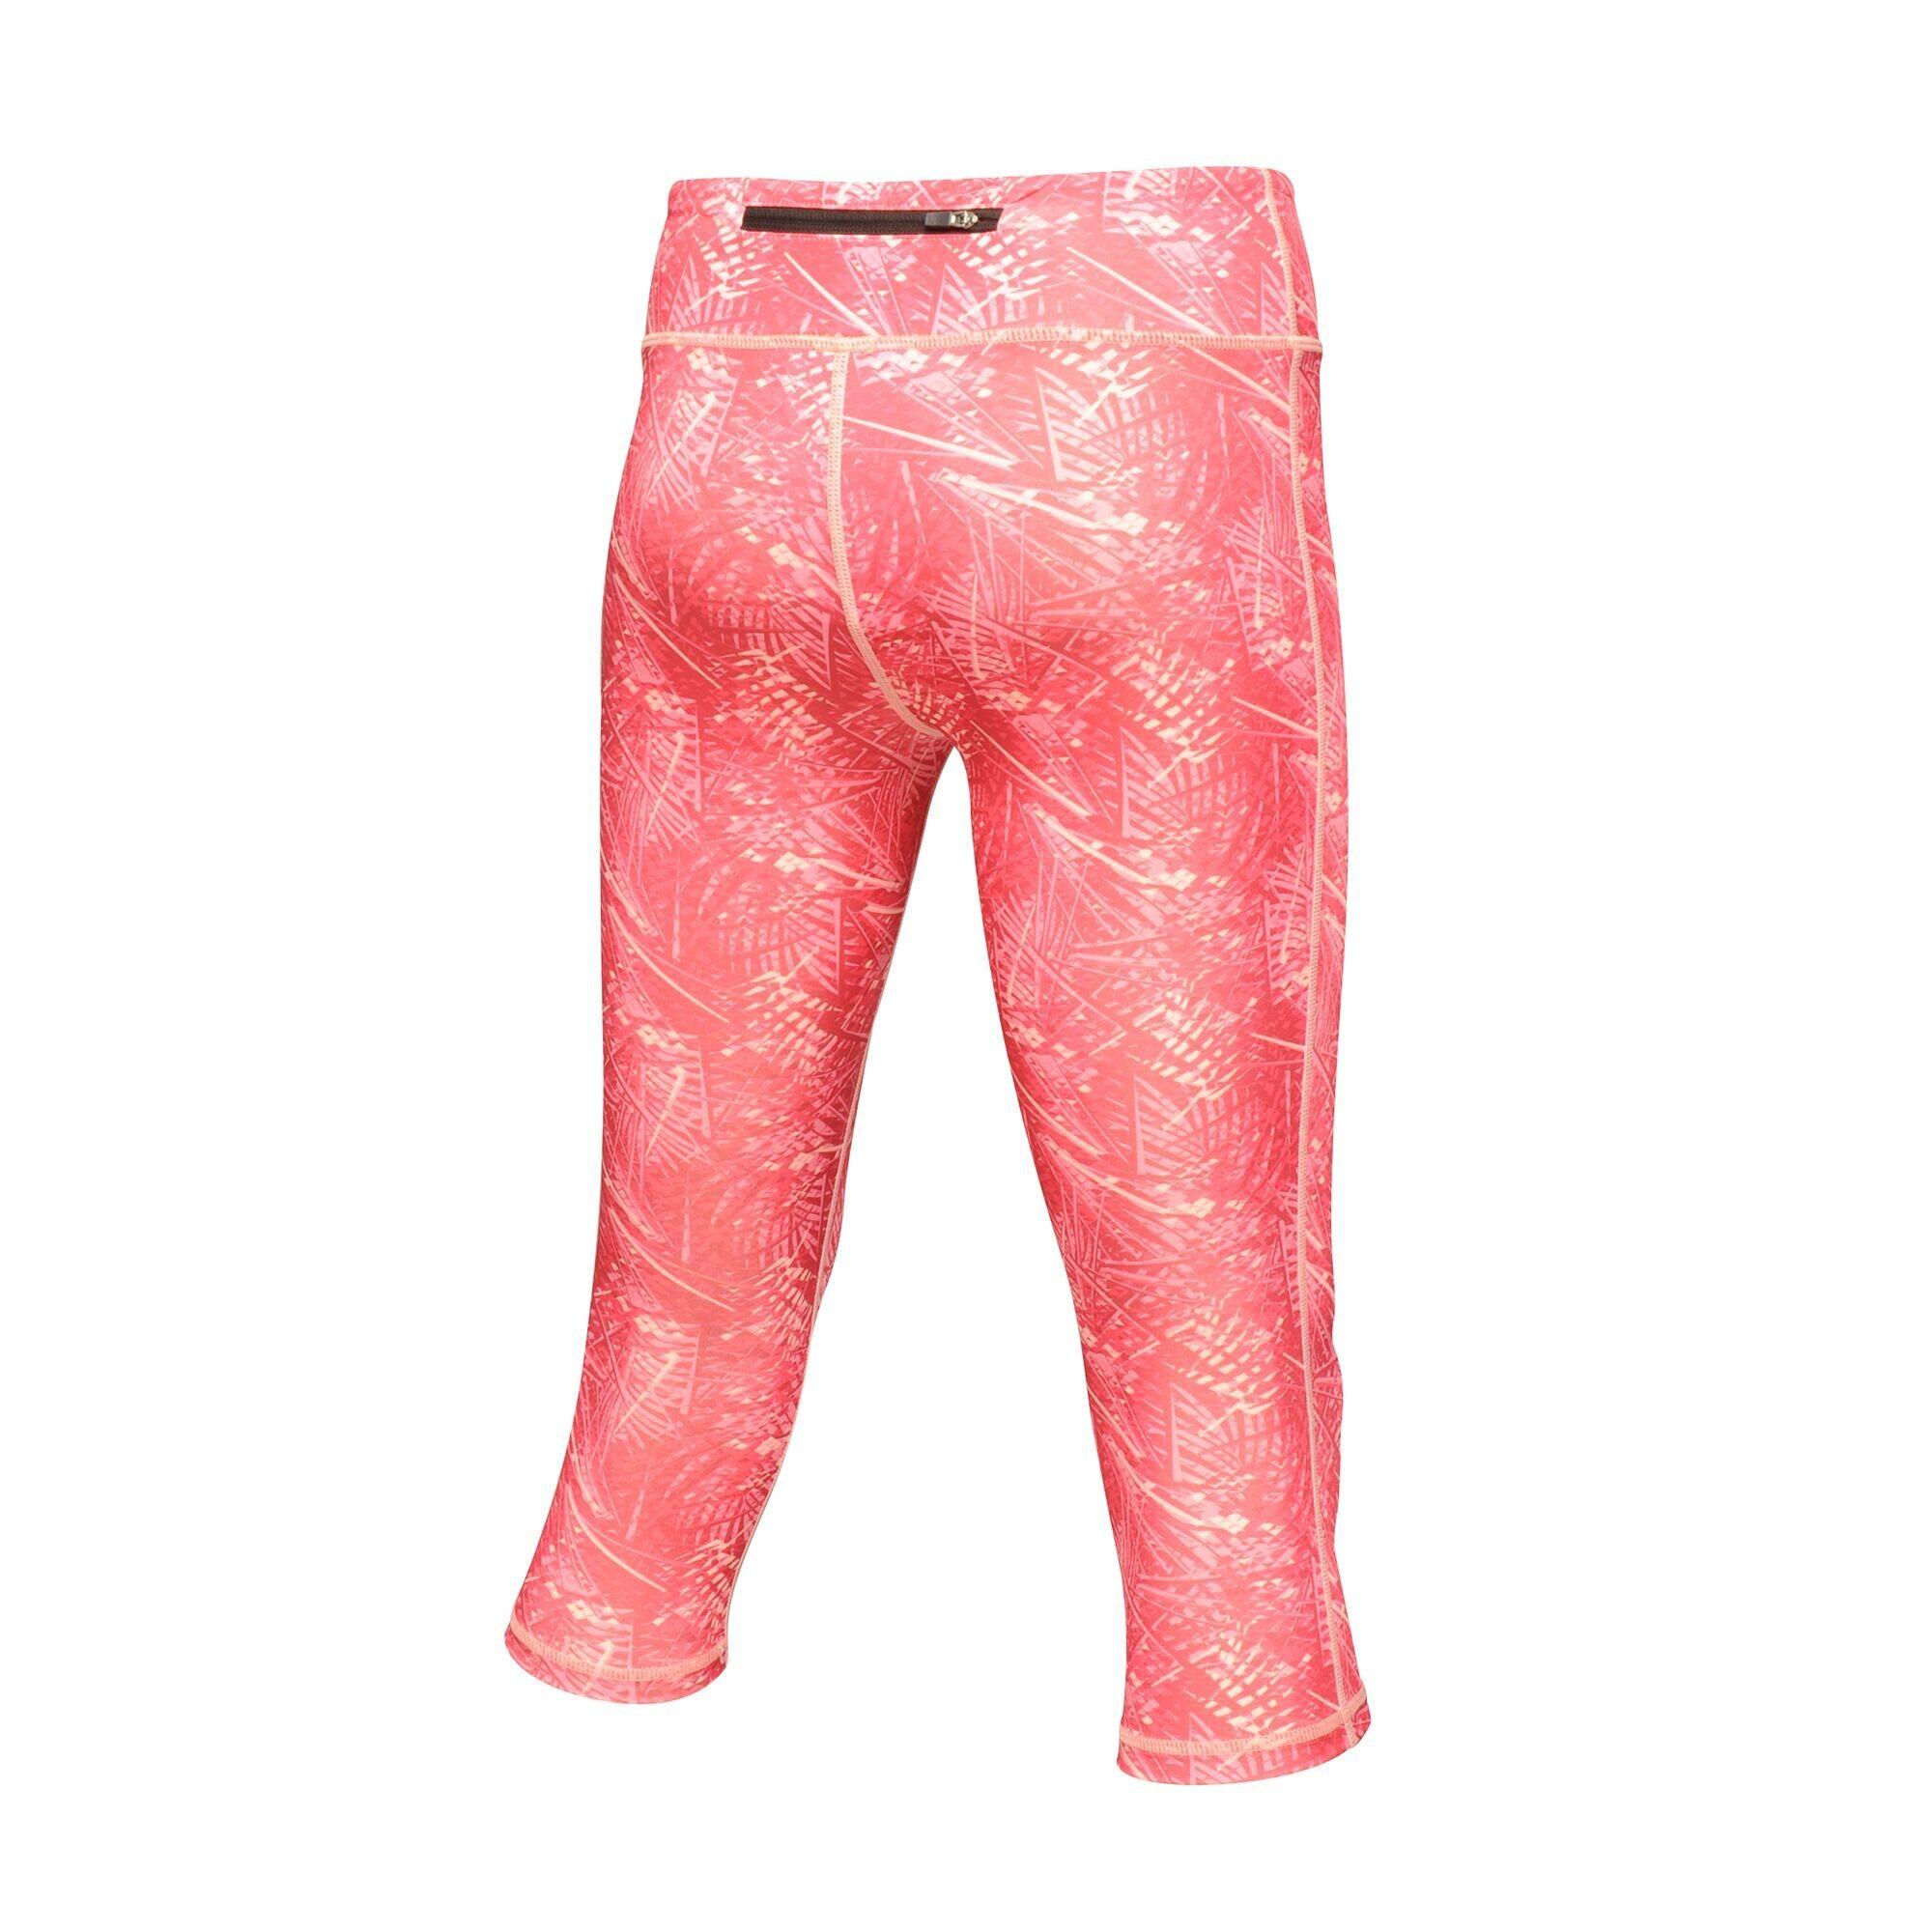 Womens/Ladies Pincha 3/4 Leggings (Hot Pink Print) 2/5